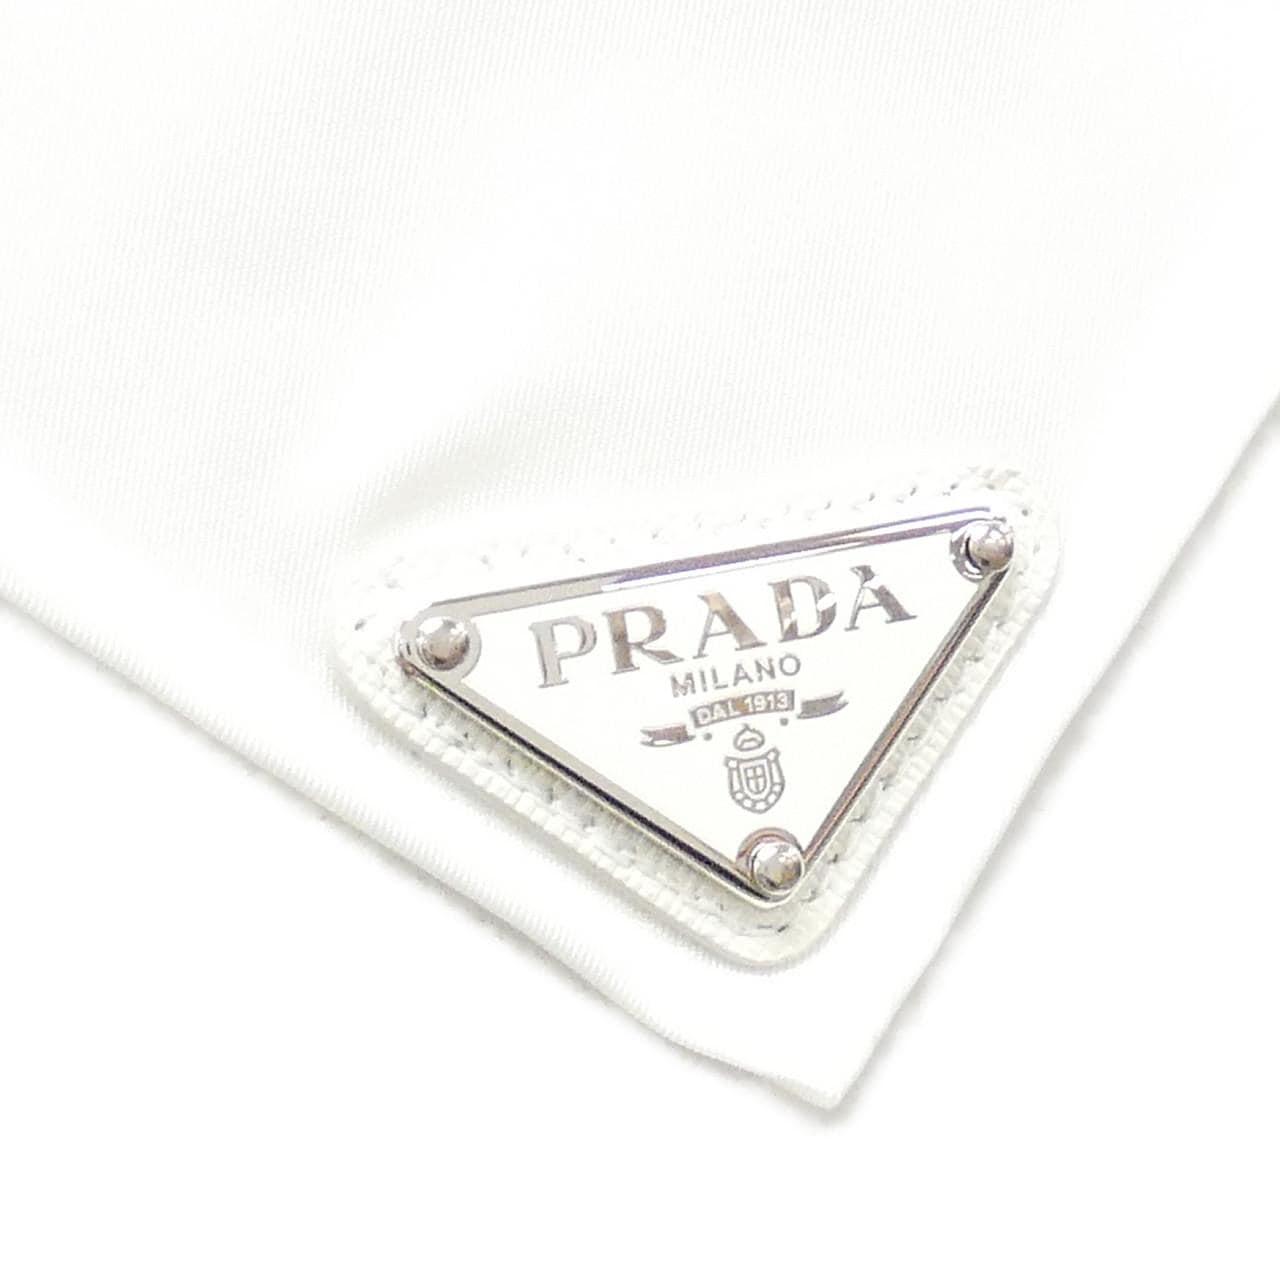 [Unused items] Prada 2FF036 scarf